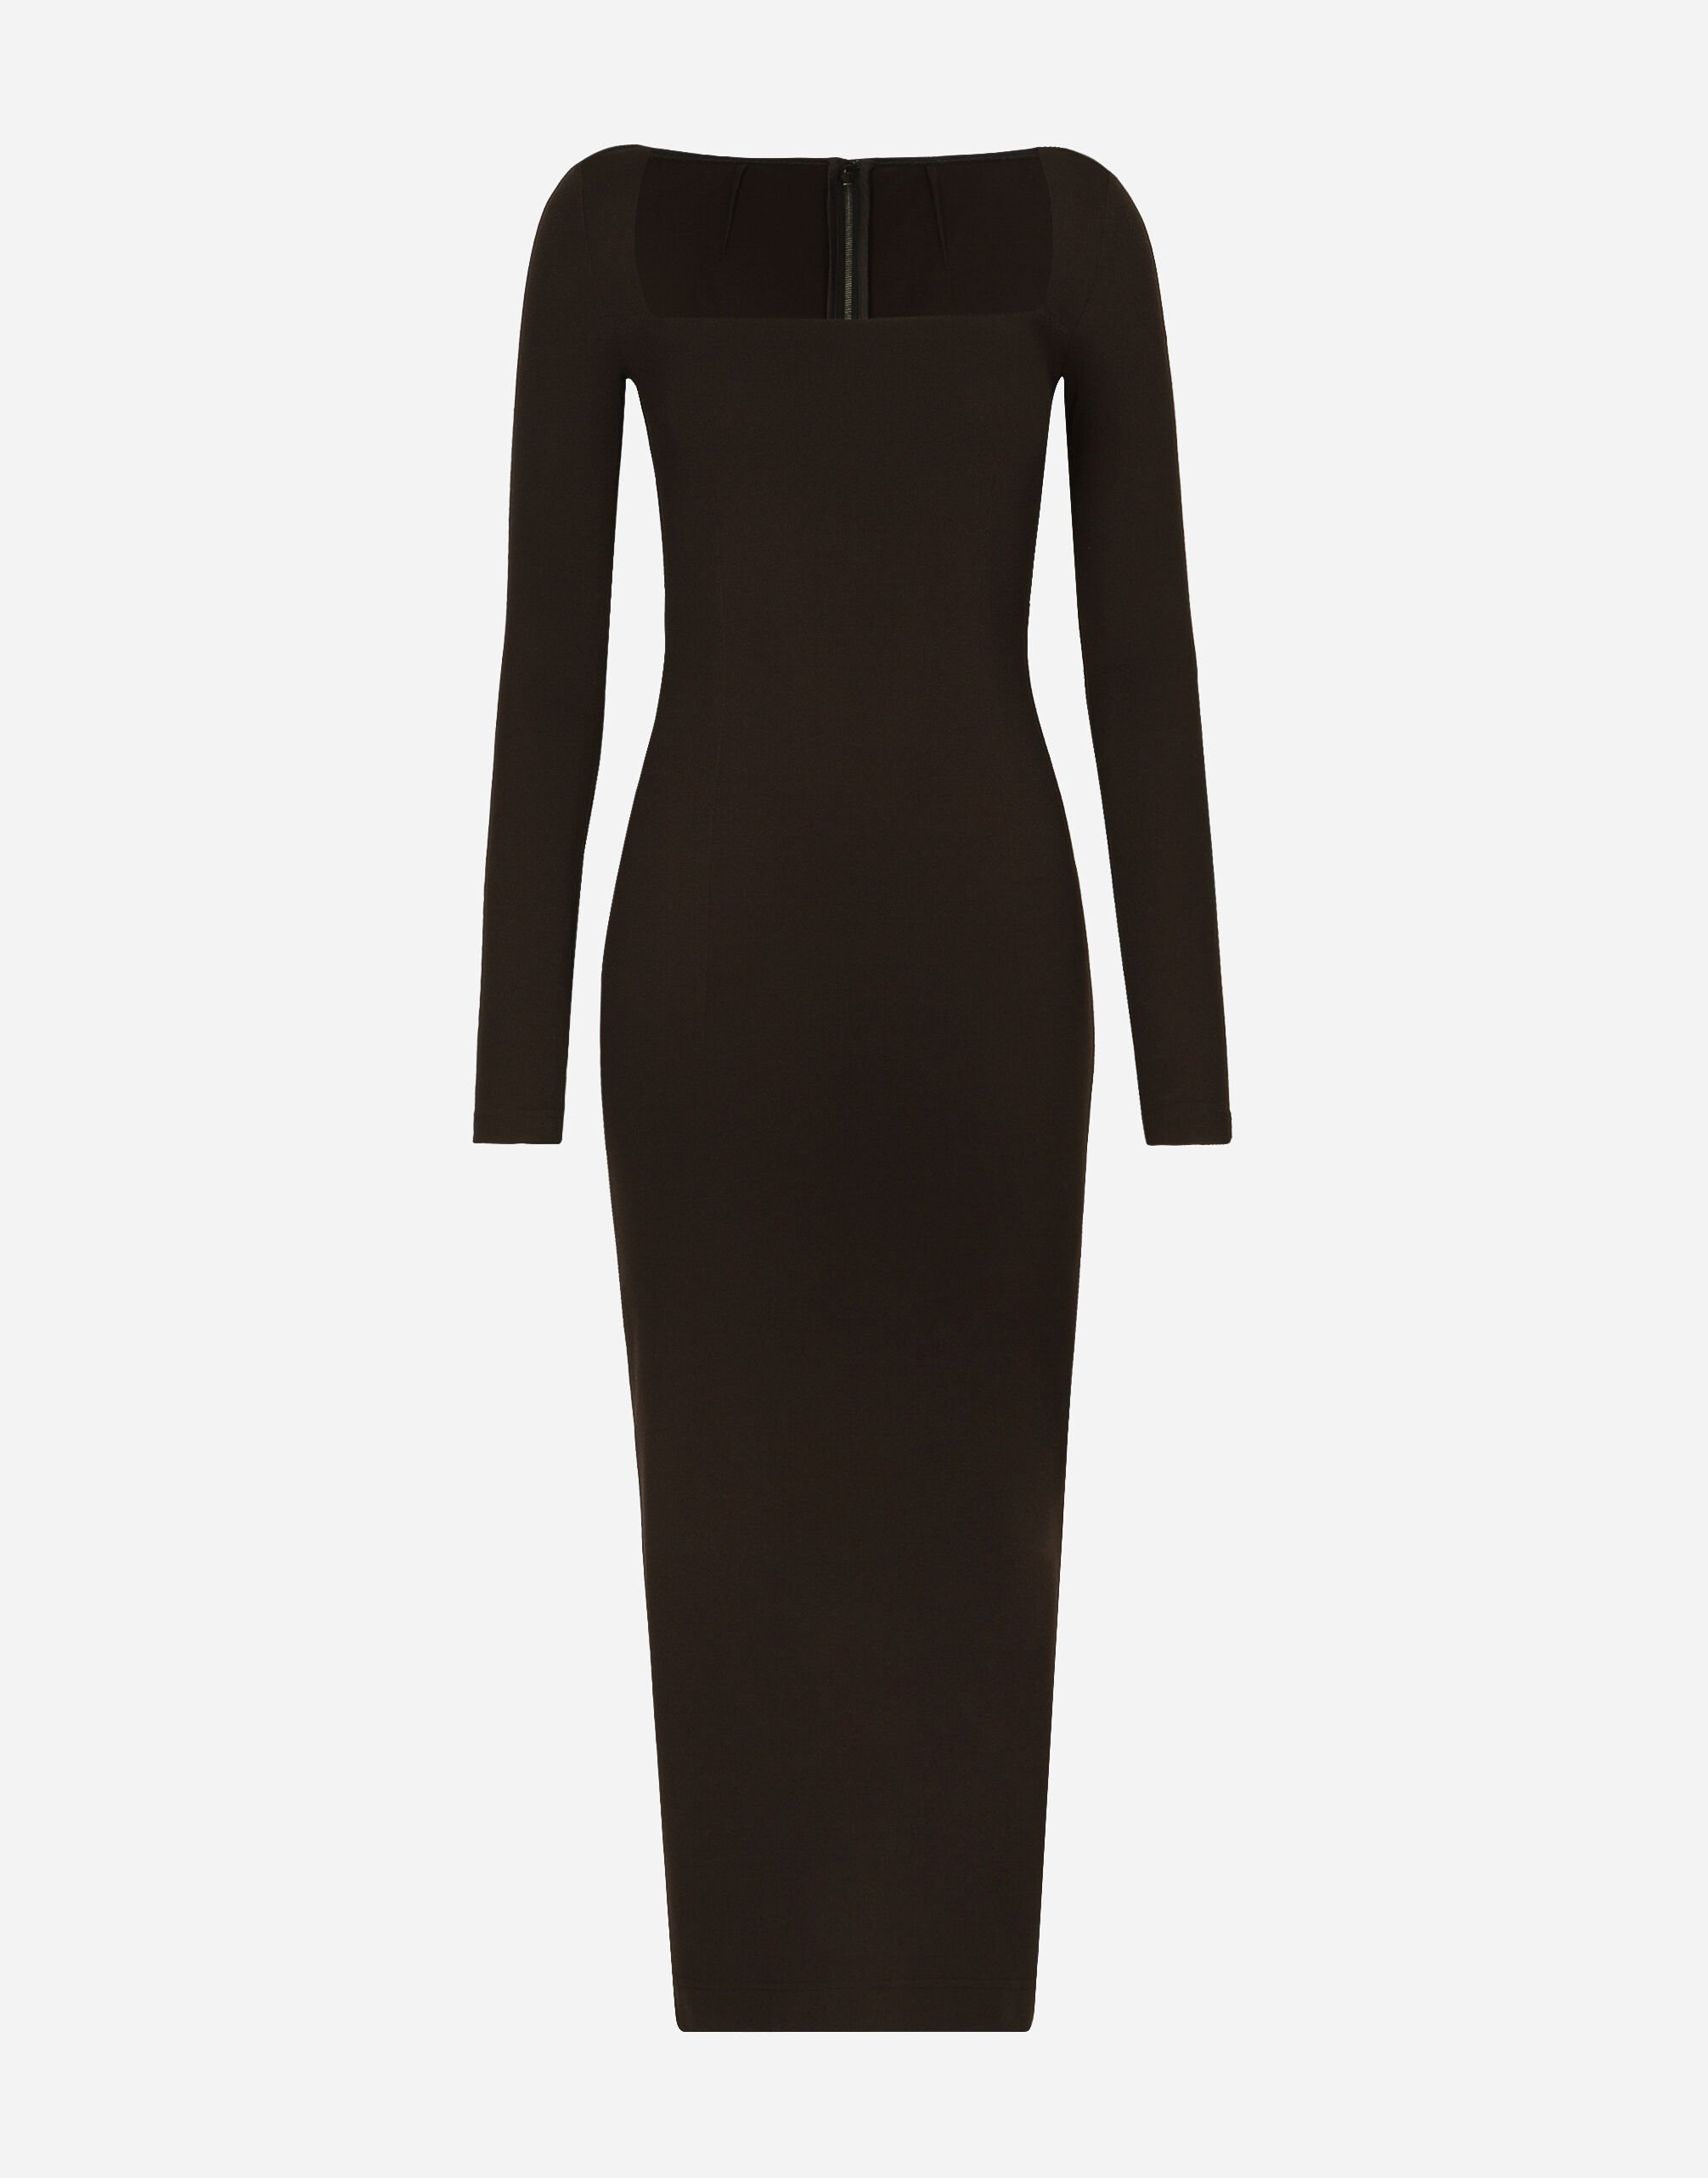 Dolce & Gabbana Technical jersey calf-length dress Black VG2298VM587